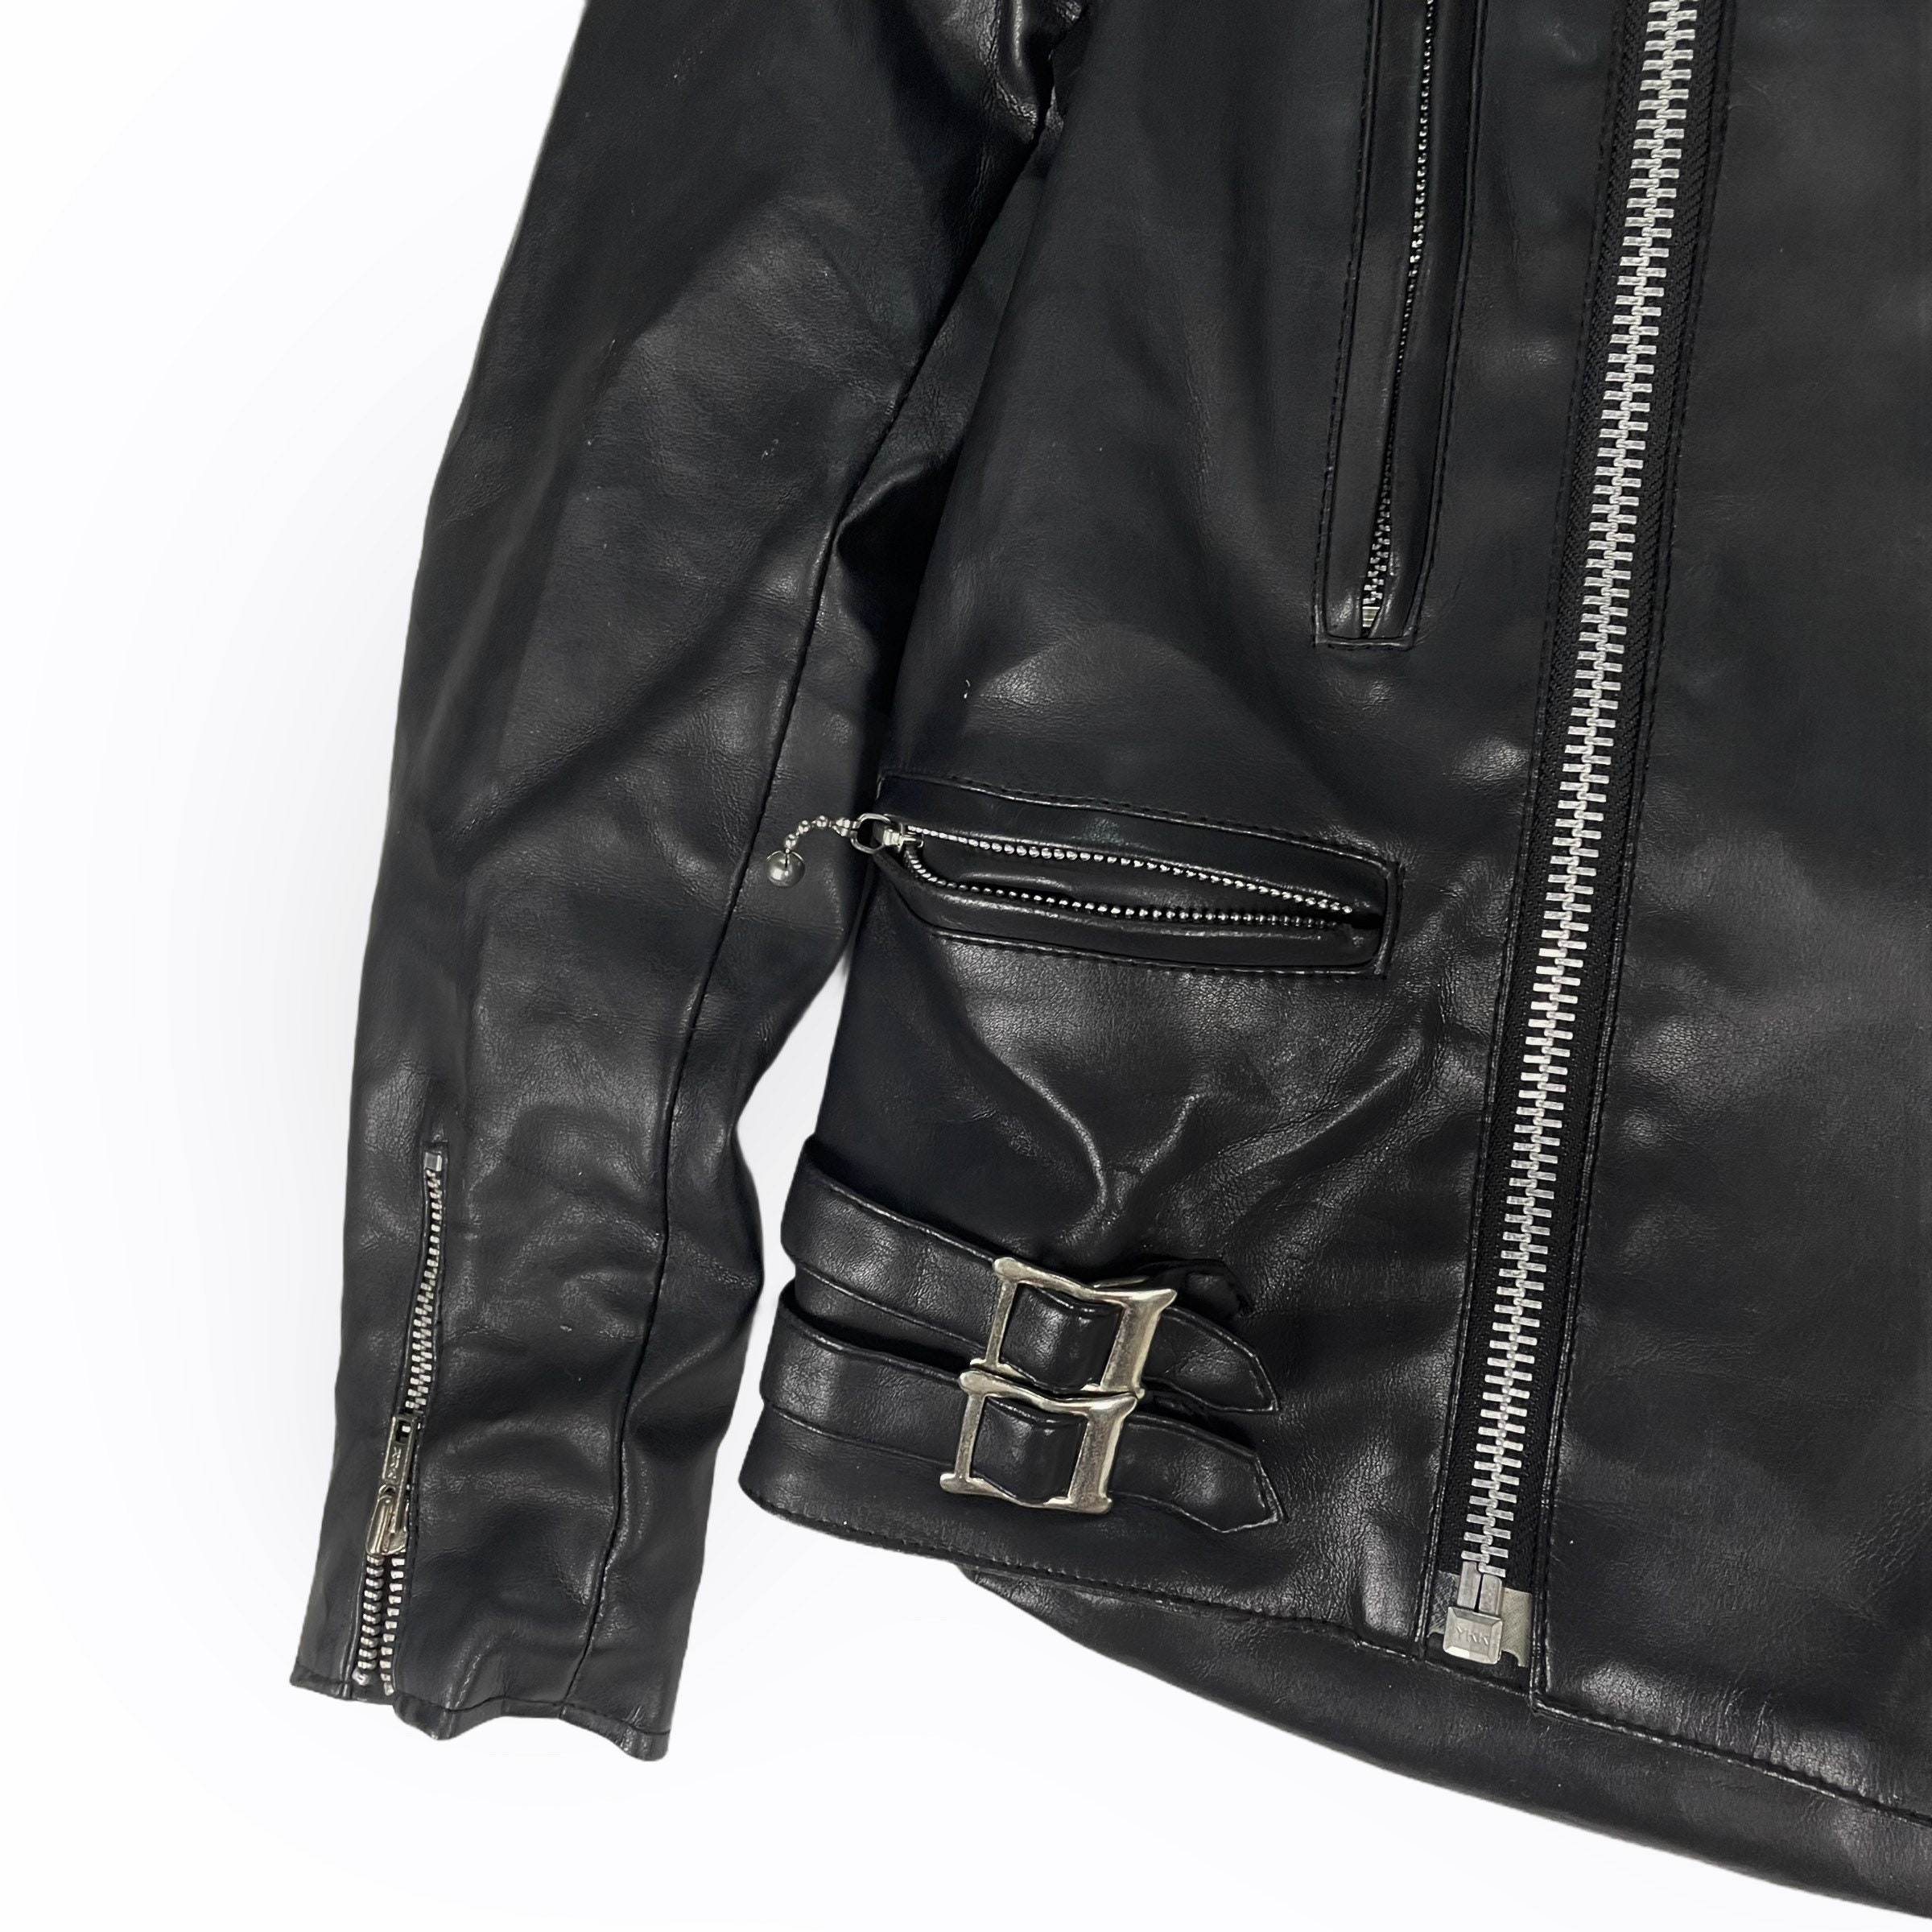 Wick Leather Biker Jacket Black